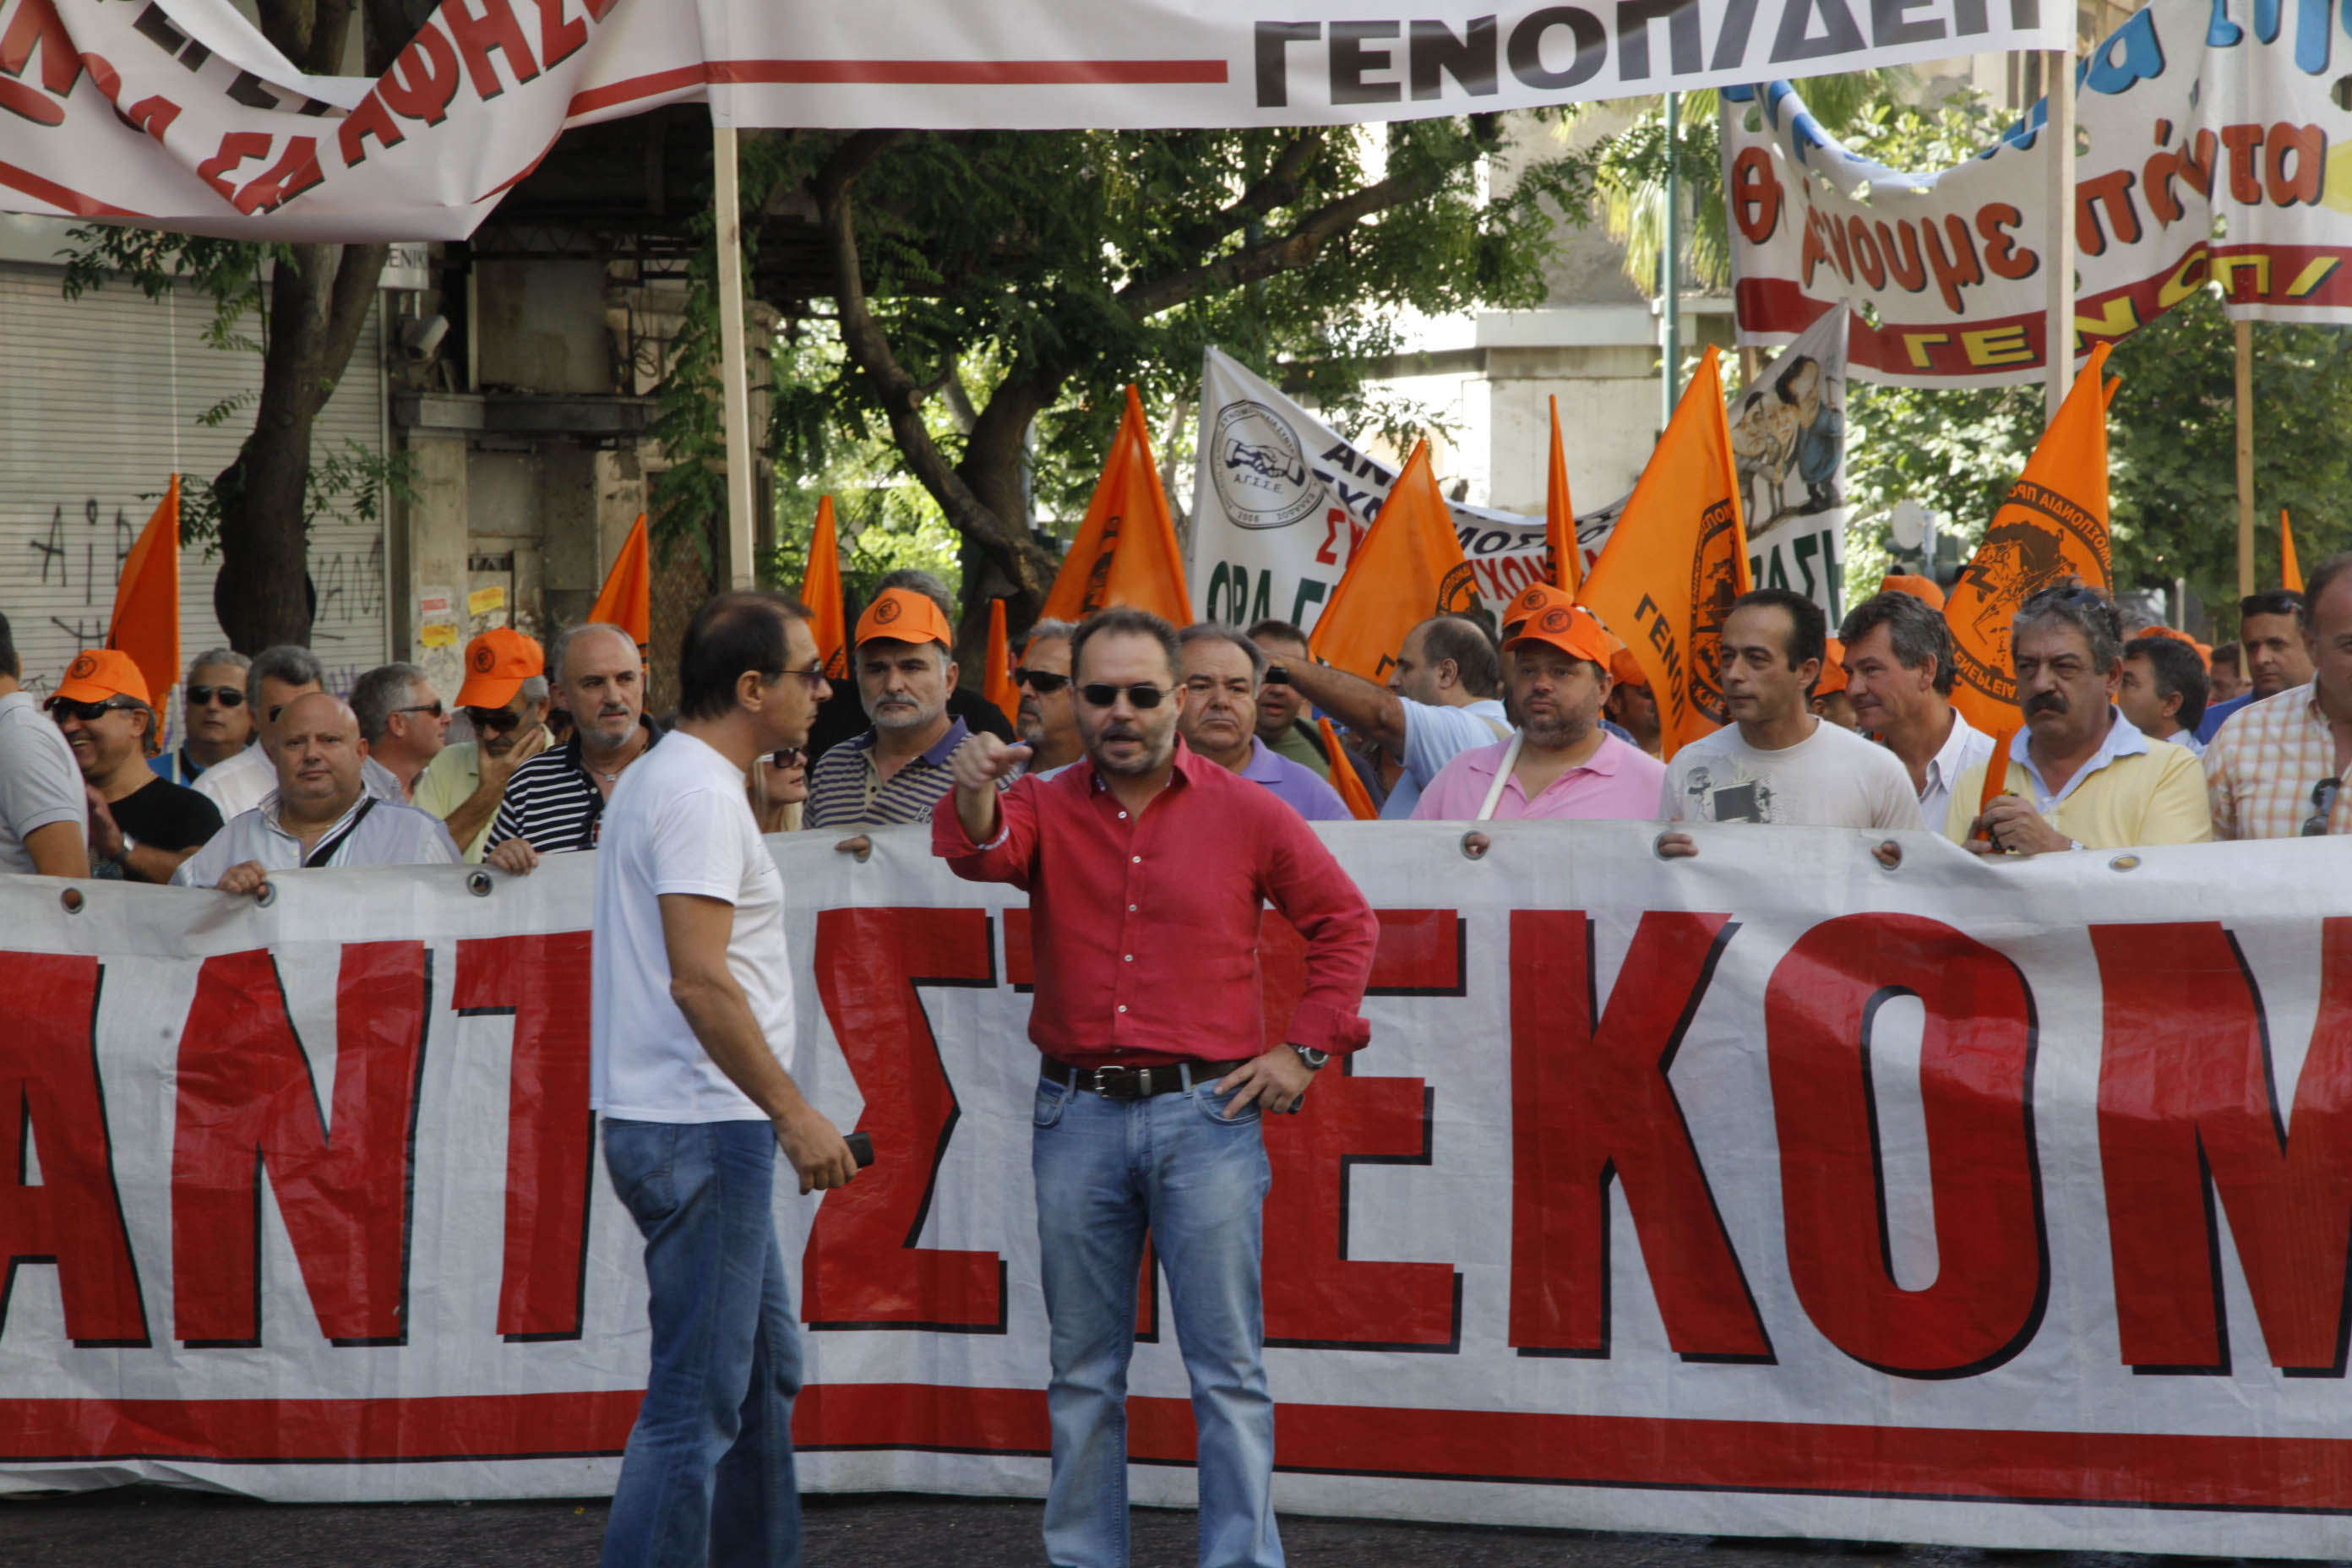 Καταλήψεις υπουργείων και Τραπεζών προτείνει ο Ν. Φωτόπουλος